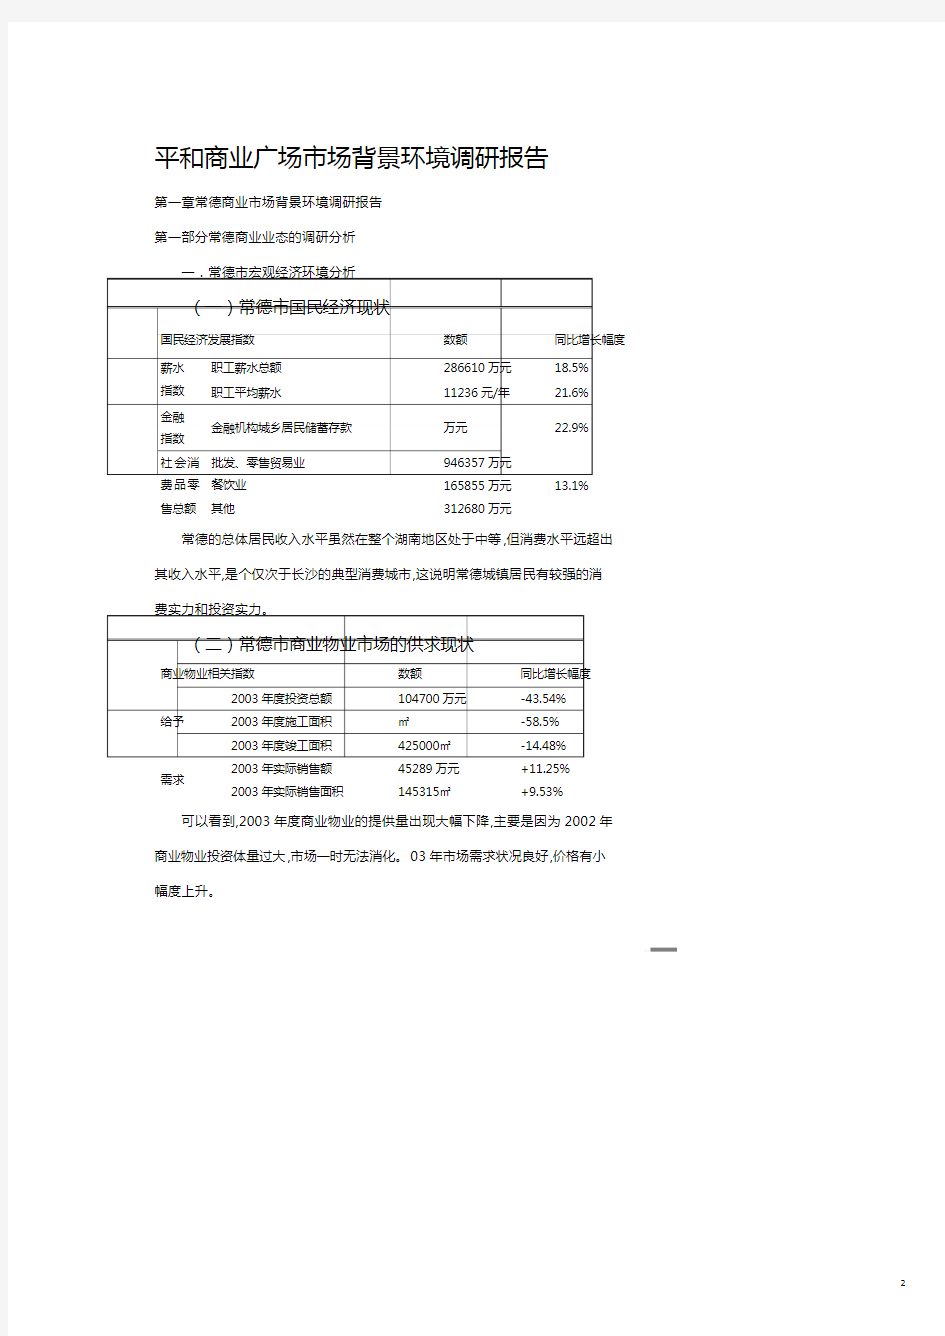 某商业广场市场环境调研报告.pdf